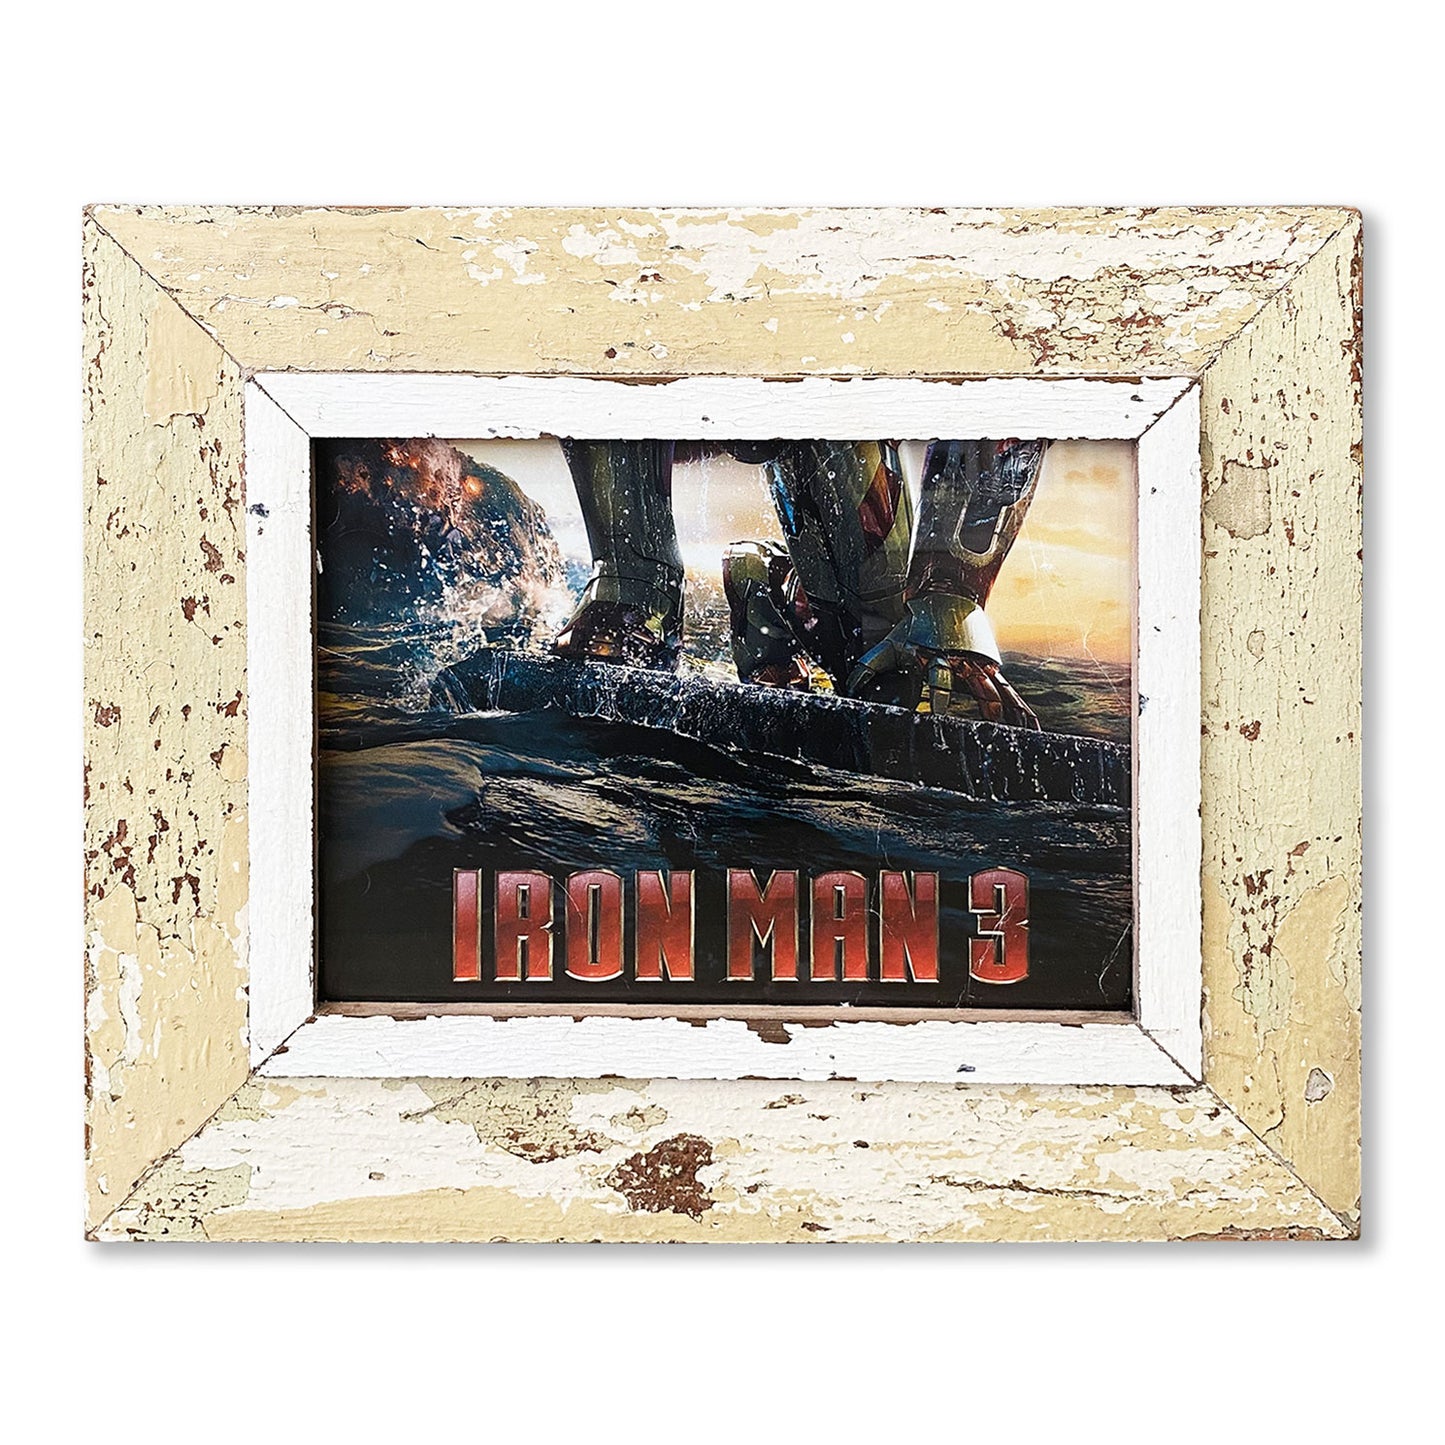 Cornice A4 con immagine poster Iron man, marvel